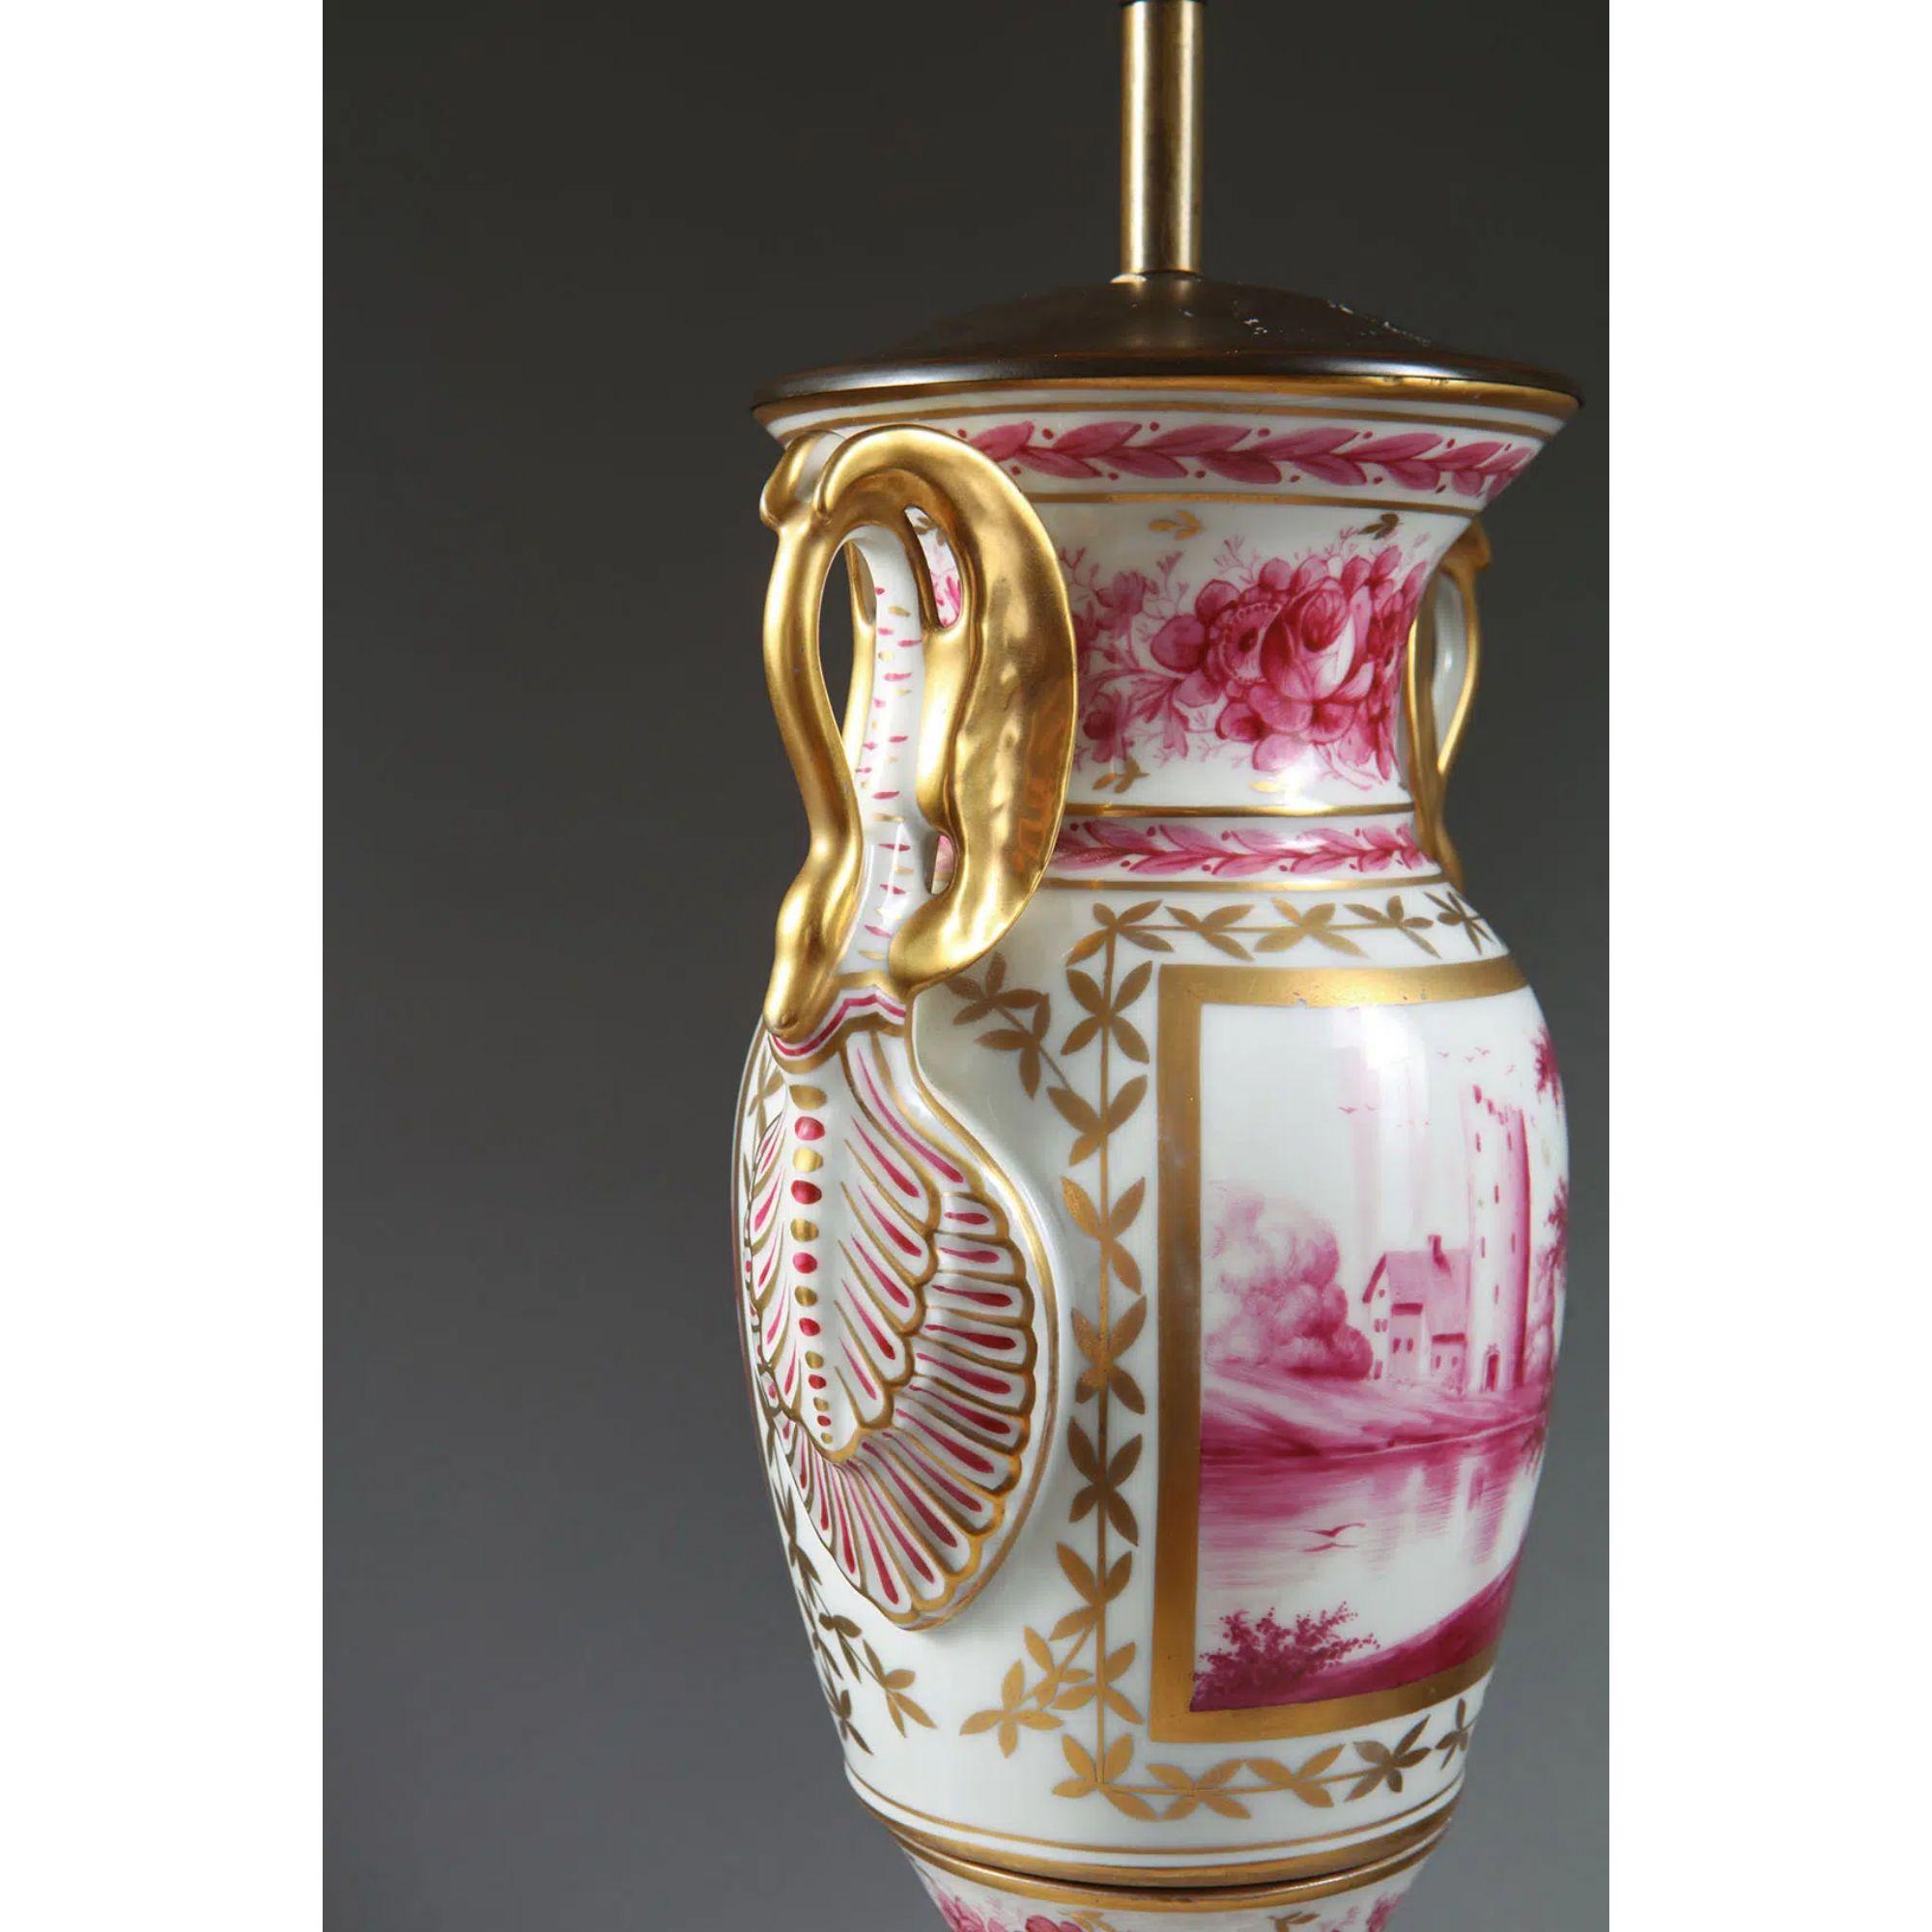 Vase en porcelaine de Paris émaillée rose et or sur blanc monté en lampe de table

Paris Porcelaine monochrome à pigment rose sous glaçure représentant des scènes bucoliques, les vases avec des poignées de cygne dorées, maintenant montés comme lampe